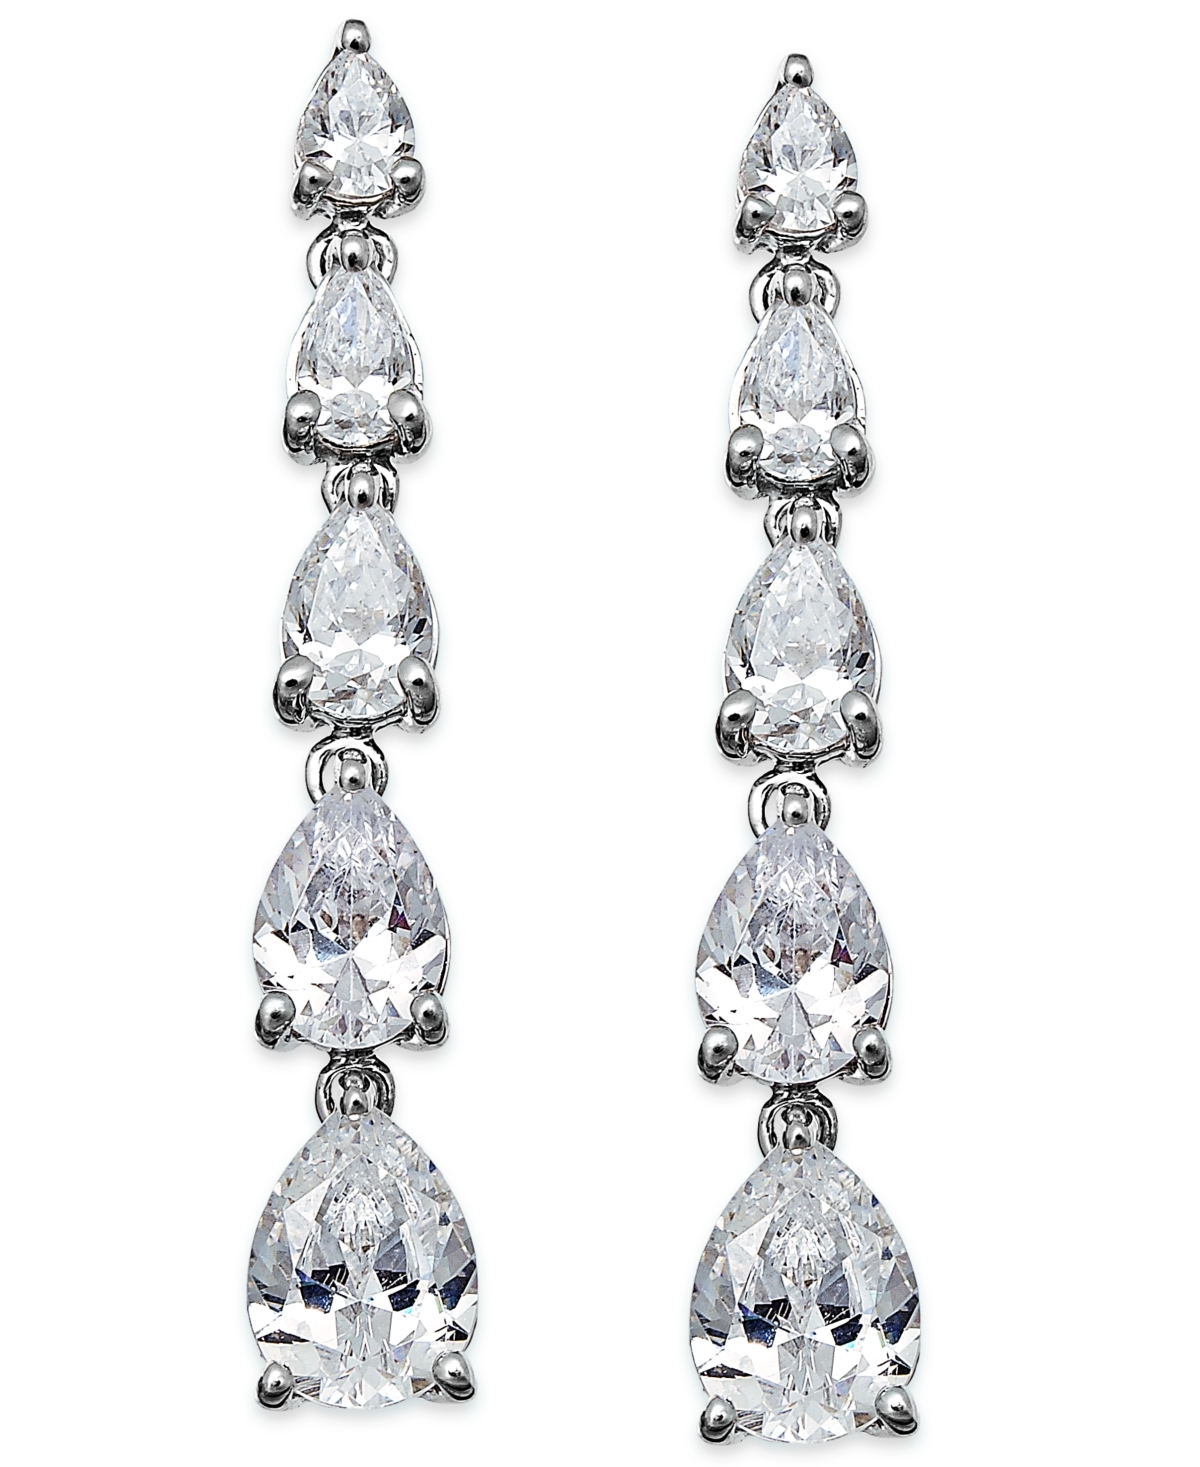 Arabella Cubic Zirconia Graduated Linear Earrings in Sterling Silver (8 ct. t.w.)